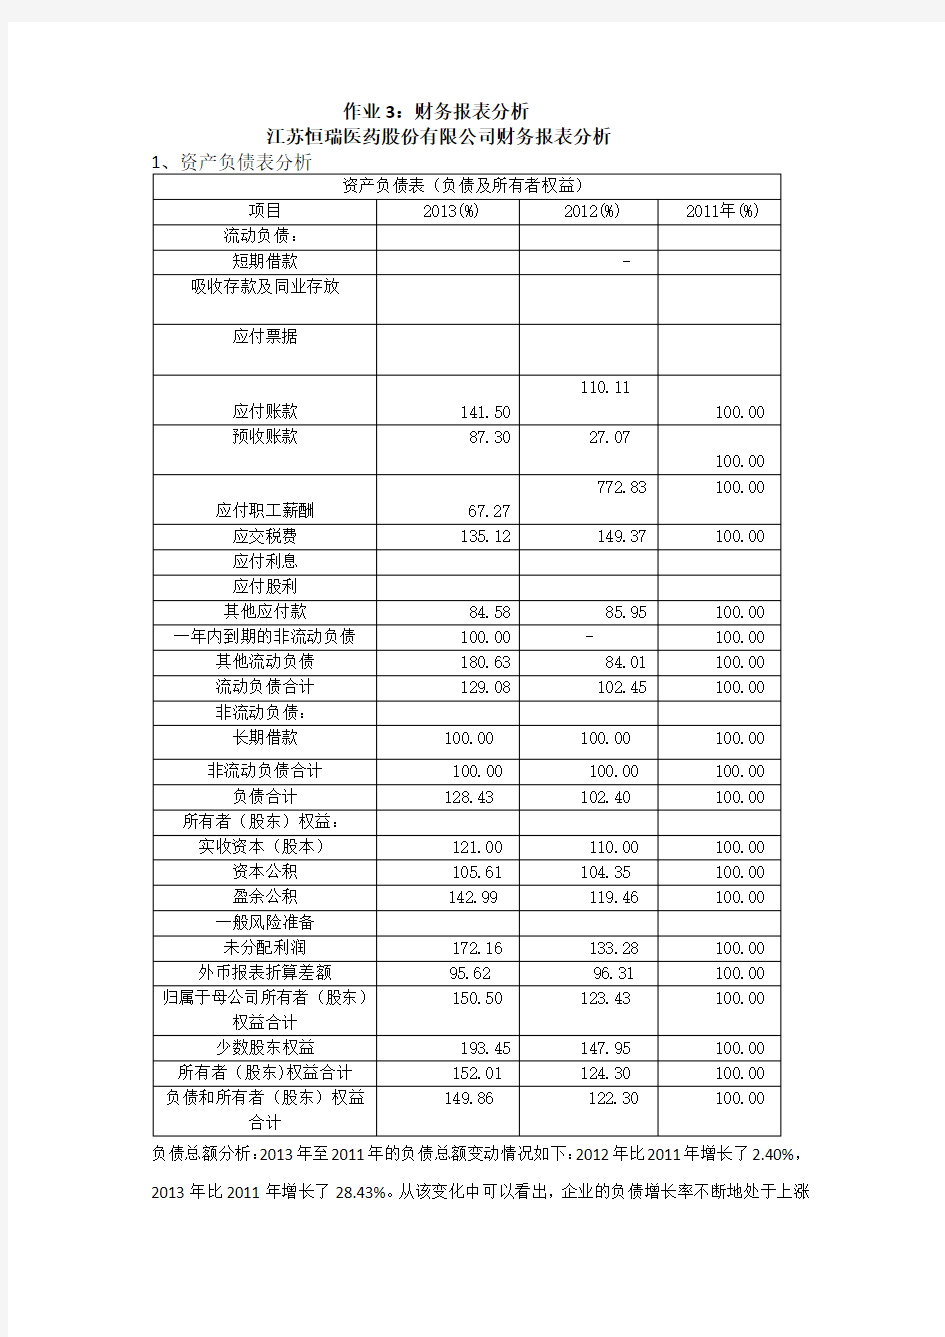 江苏恒瑞医药股份有限公司财务报表分析修改版